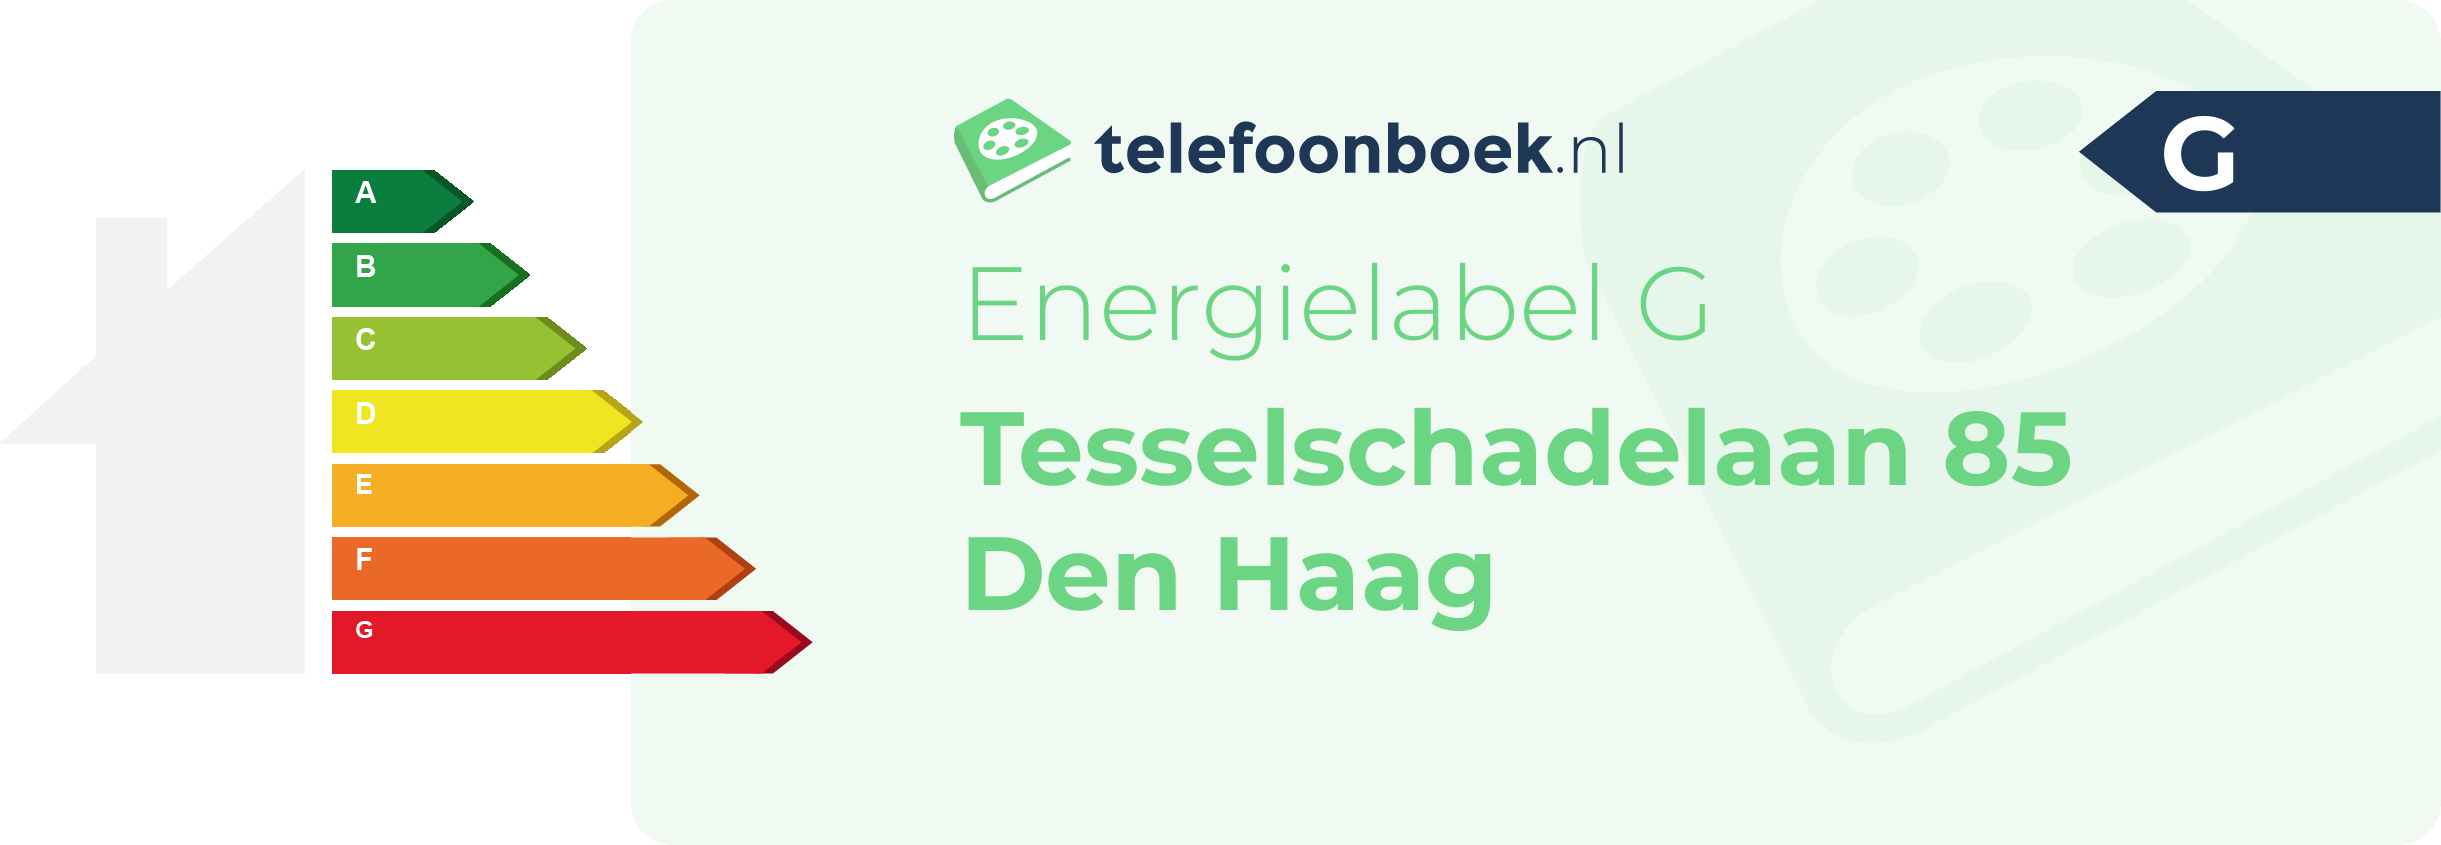 Energielabel Tesselschadelaan 85 Den Haag